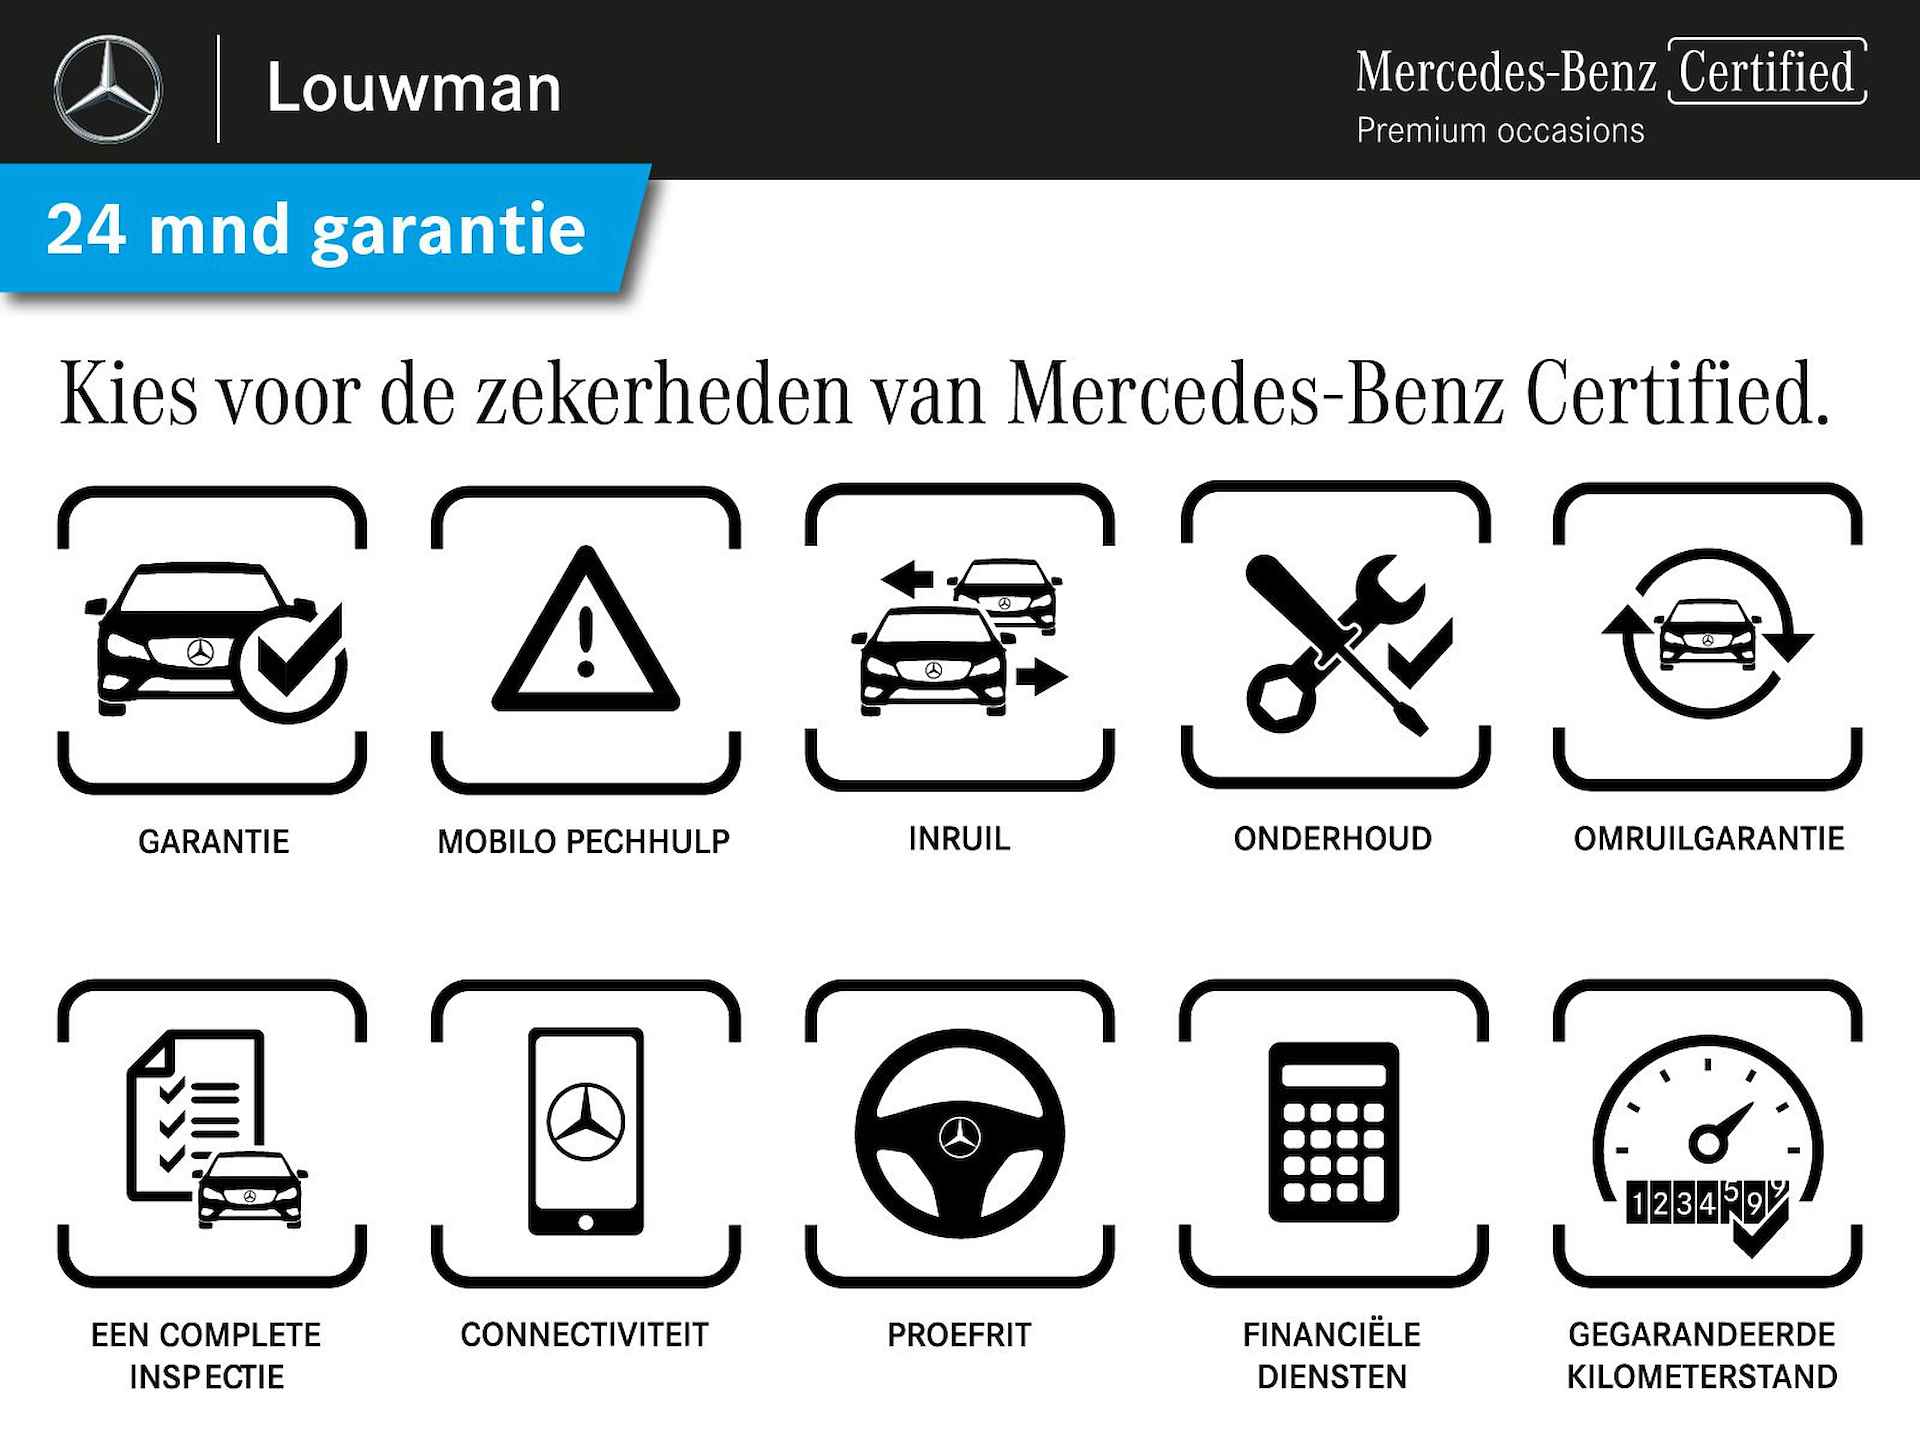 Mercedes-Benz B-Klasse 250 e AMG Line Limited Multispaaks lichtmetalen velgen | MBUX wide screen | Navigatie | Parking support | Inclusief 24 maanden Mercedes-Benz Certified garantie voor Europa. | - 45/45